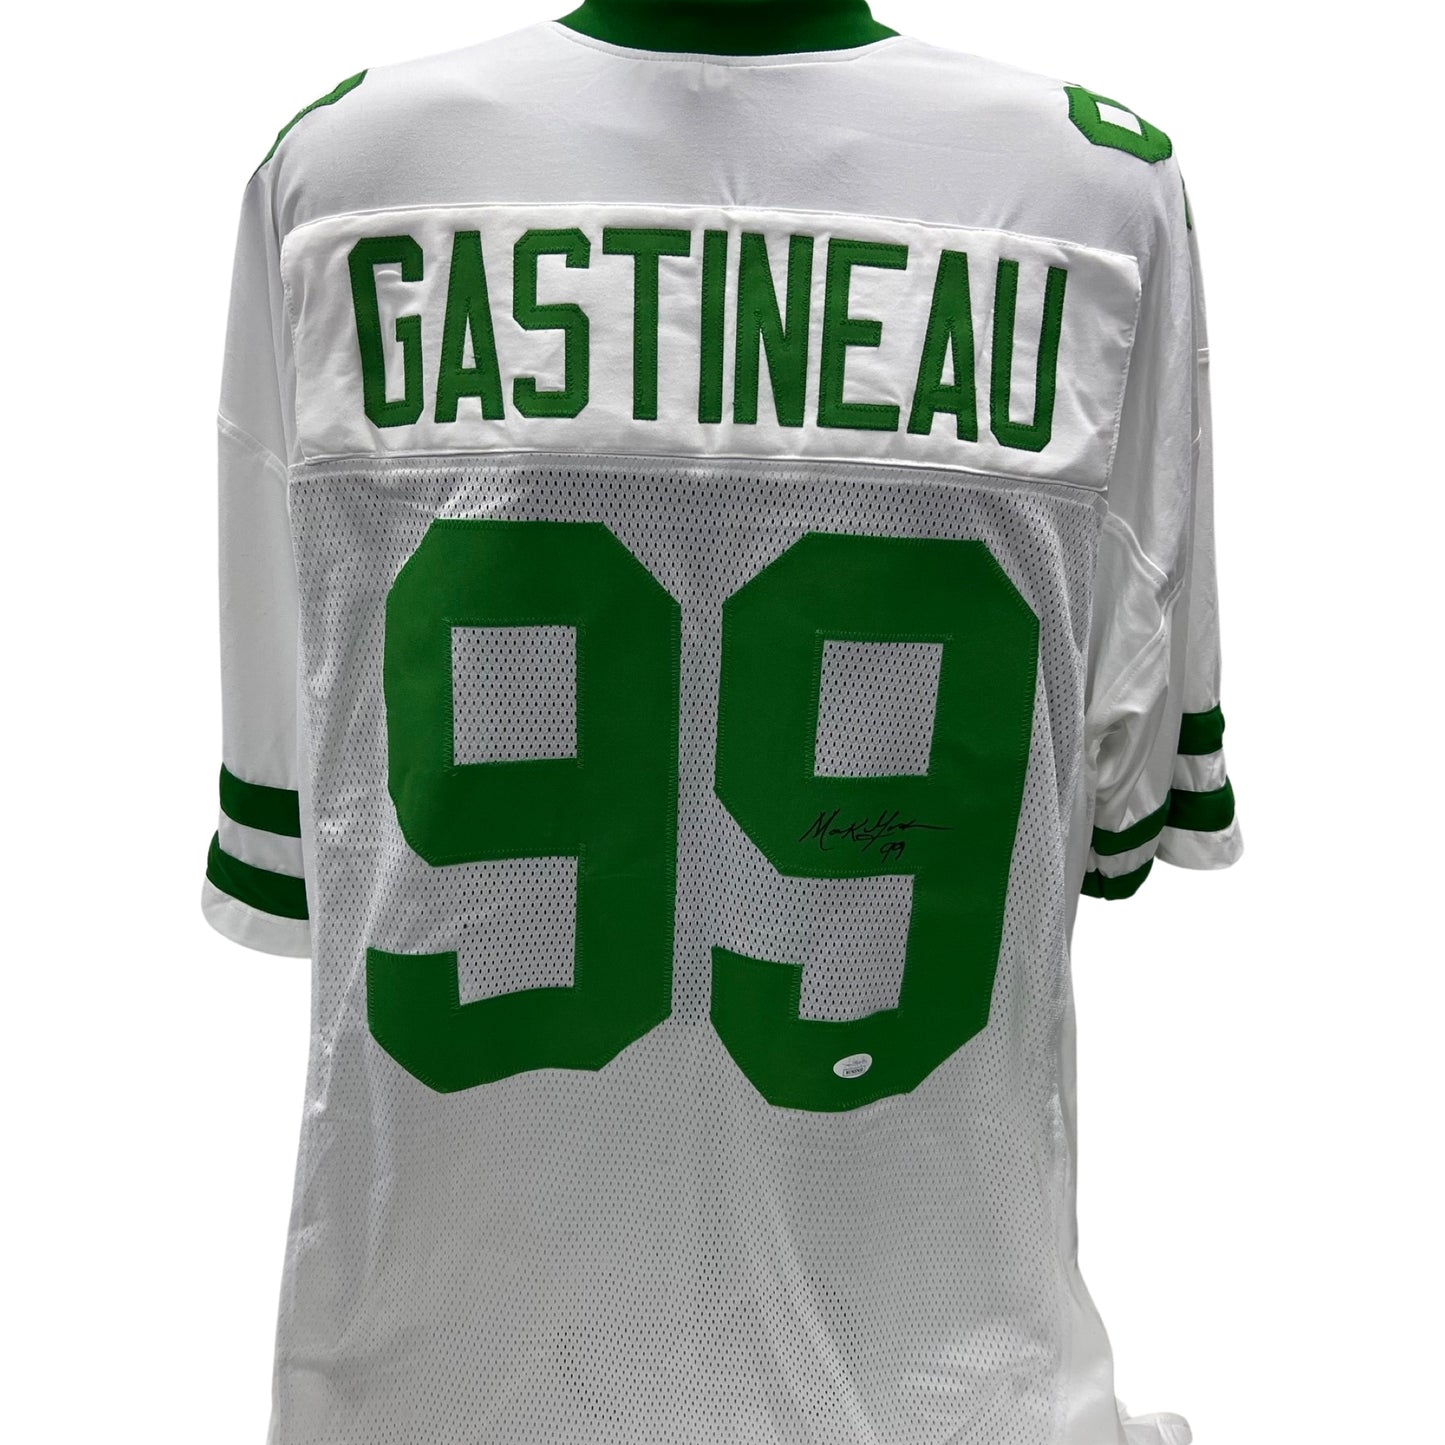 Mark Gastineau Autographed New York Jets White Jersey JSA